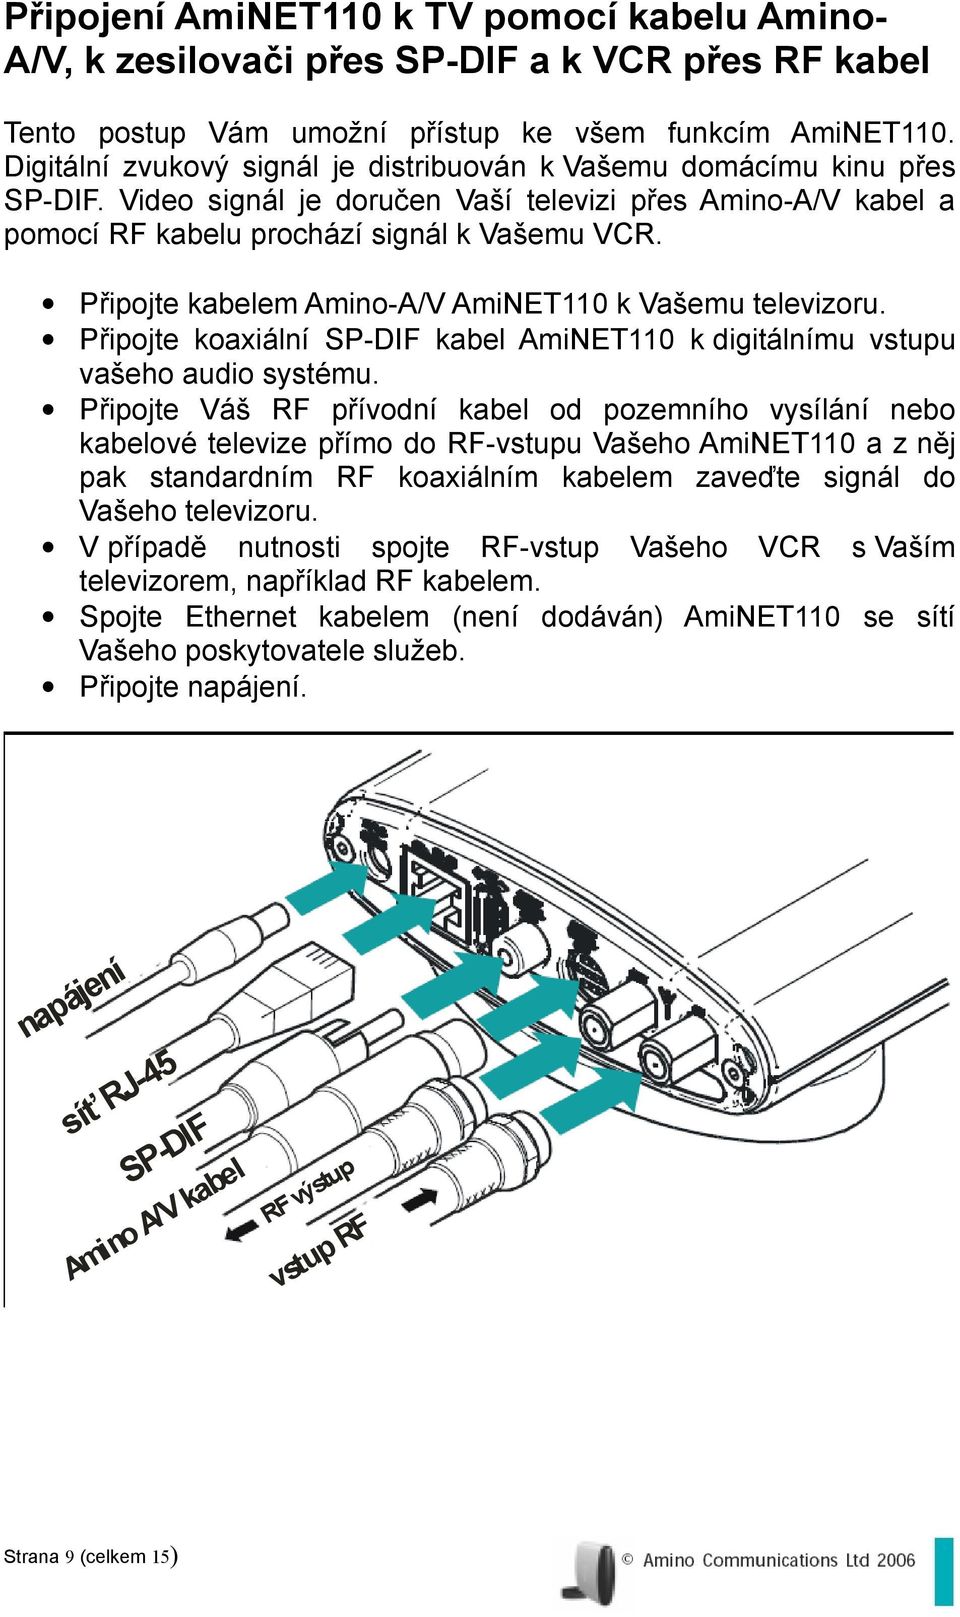 Připojte kabelem Amino-A/V AmiNET110 k Vašemu televizoru. Připojte koaxiální SP-DIF kabel AmiNET110 k digitálnímu vstupu vašeho audio systému.